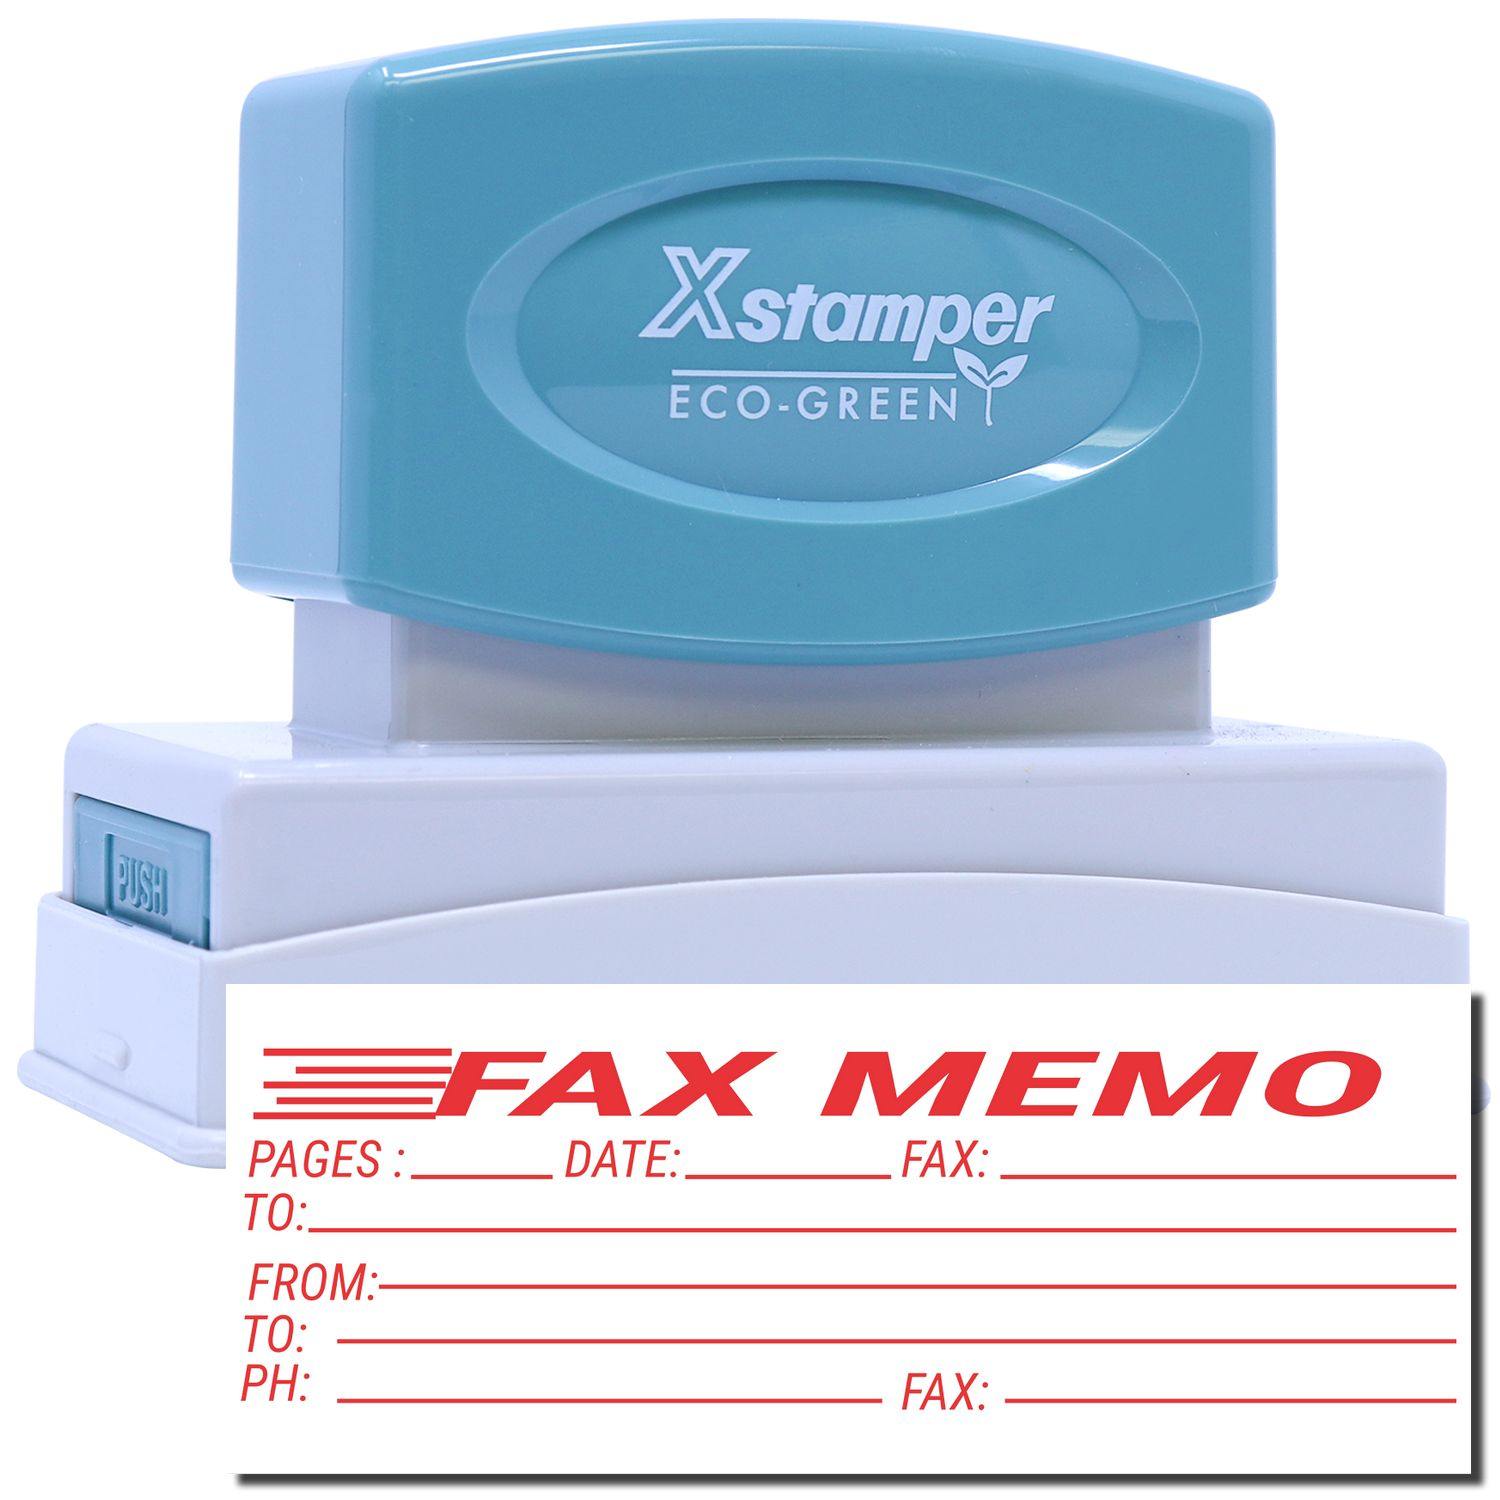 Fax Memo Xstamper Stamp Main Image